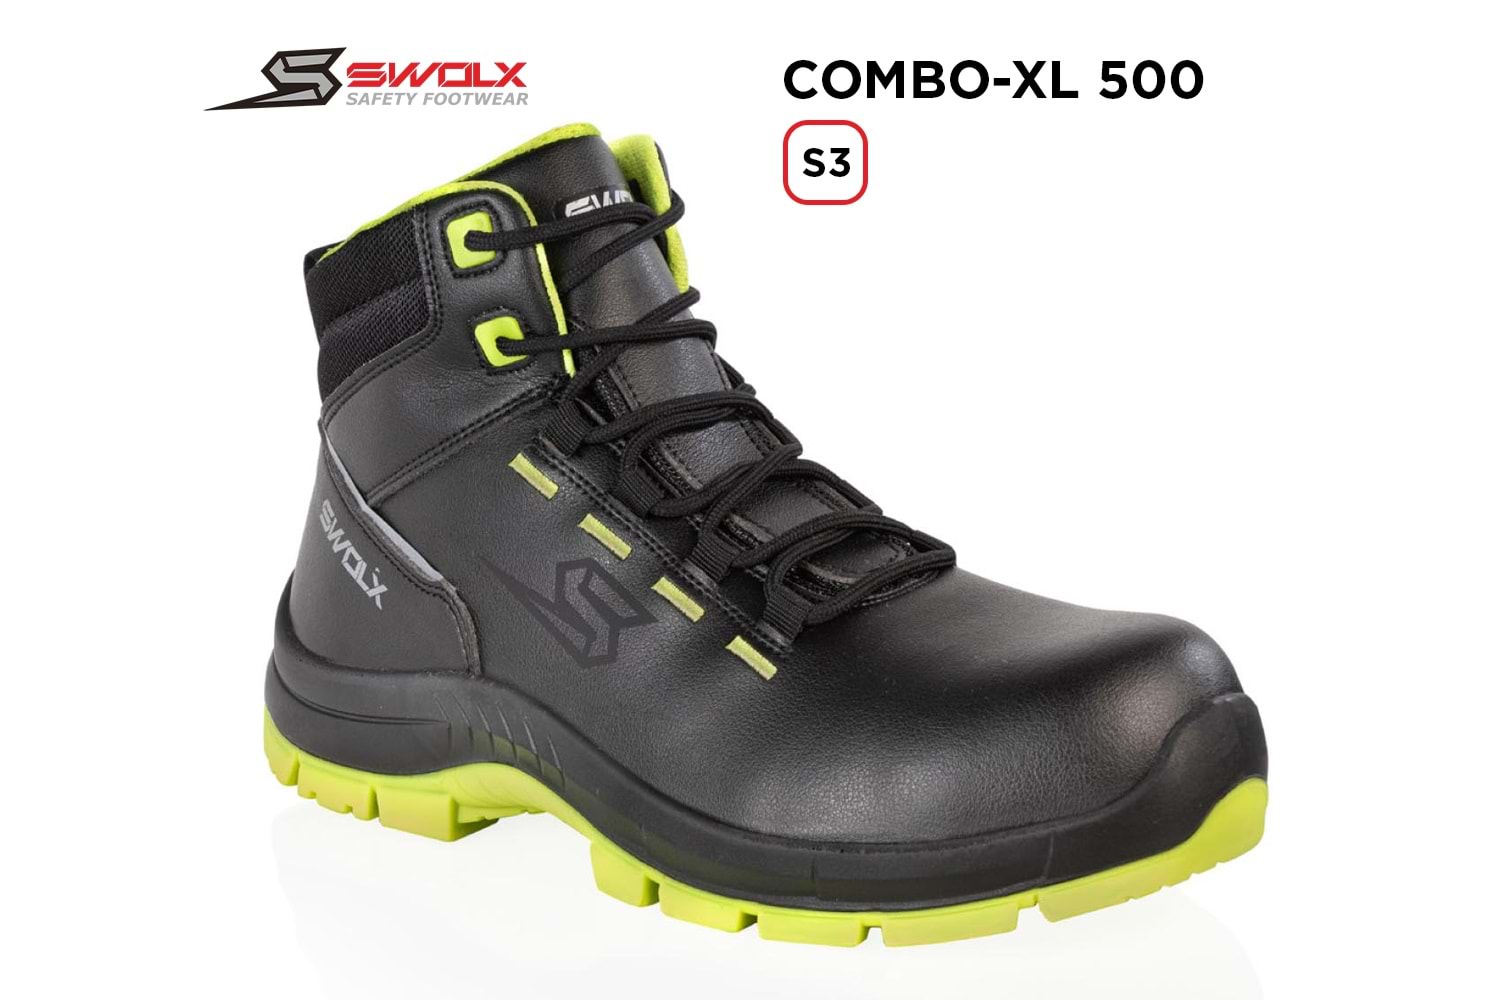 Swolx İş Ayakkabısı - Combo-Xl 500 S3 - 44